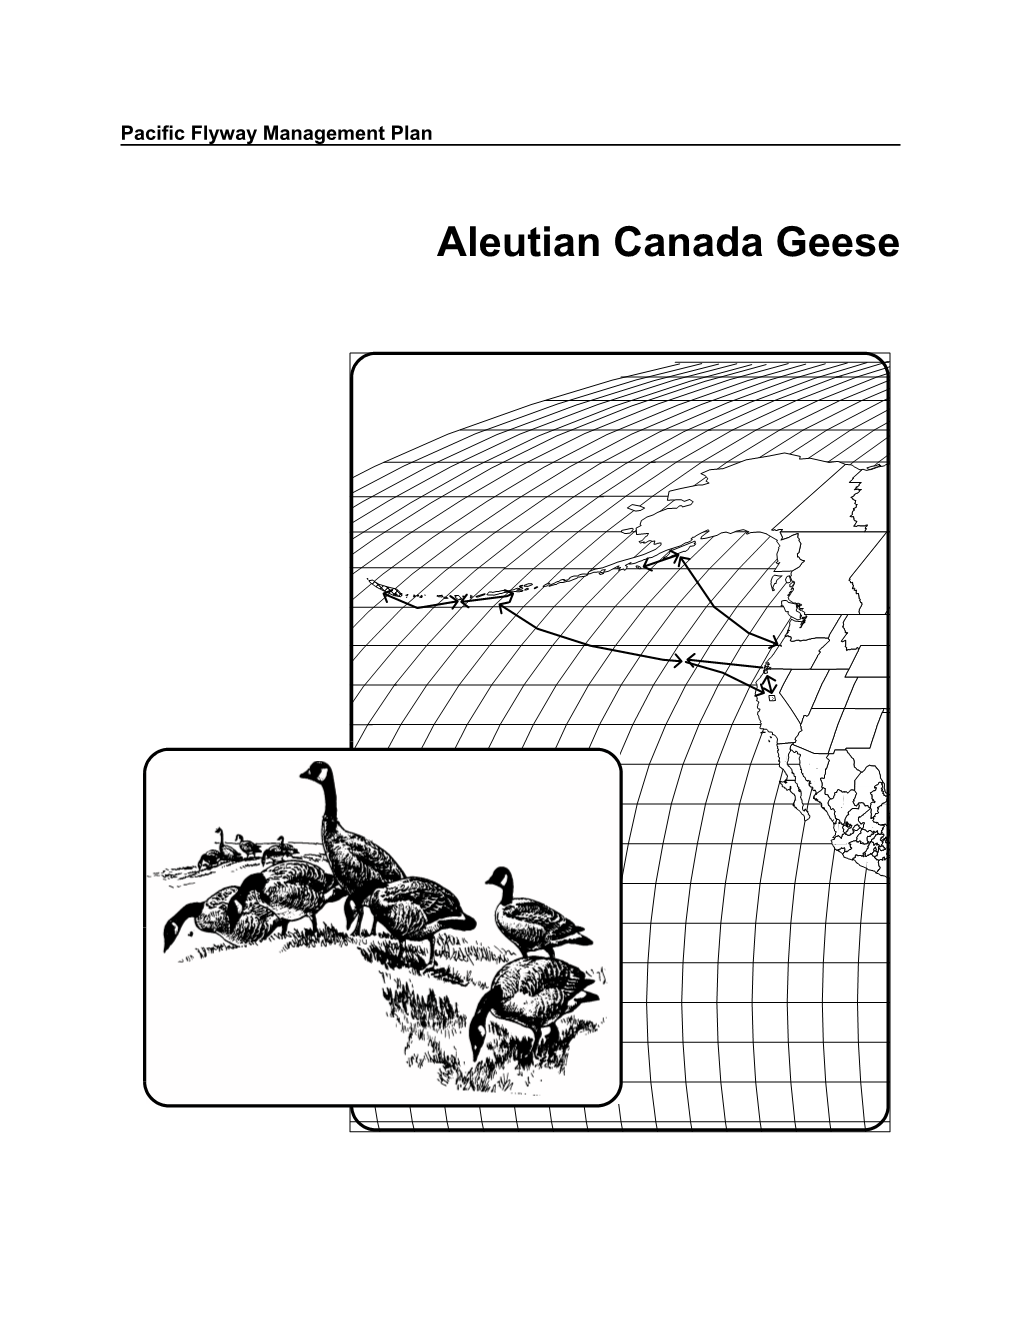 Aleutian Canada Goose Plan